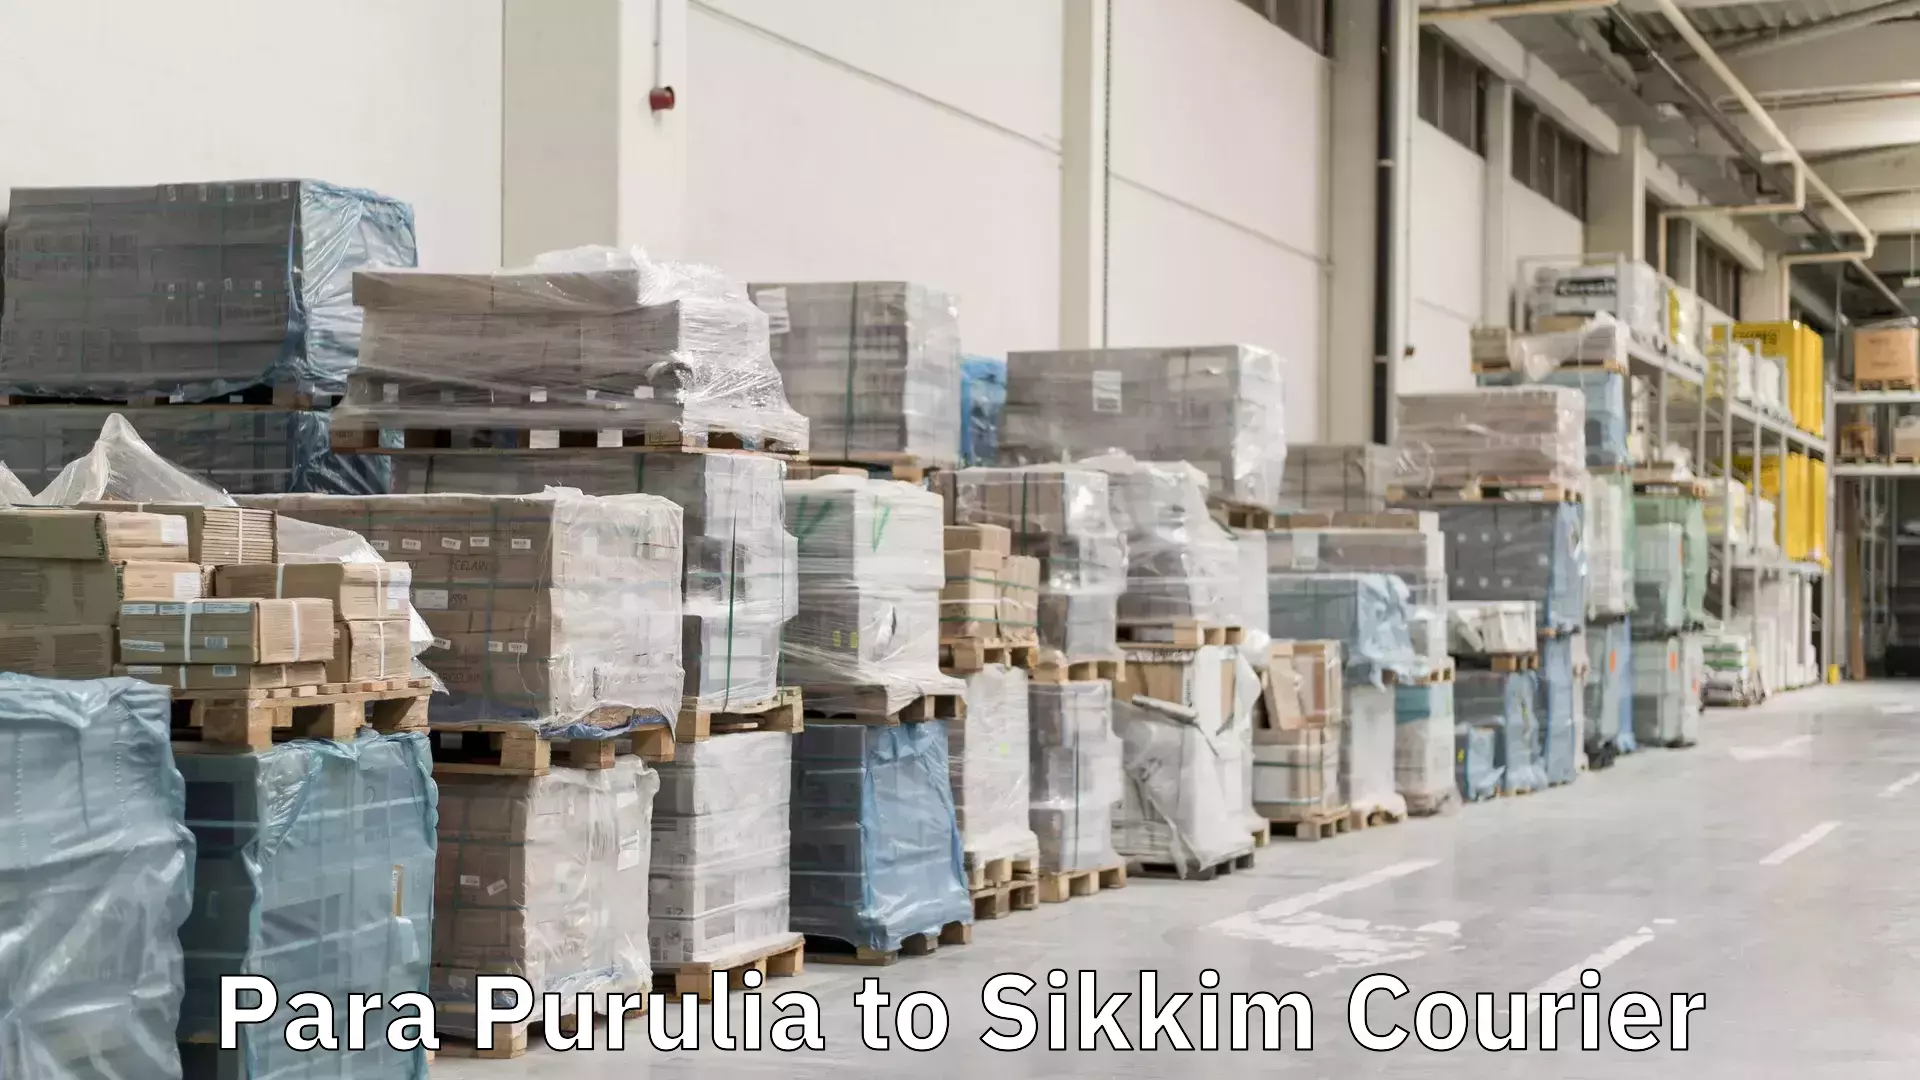 Express logistics service Para Purulia to Sikkim